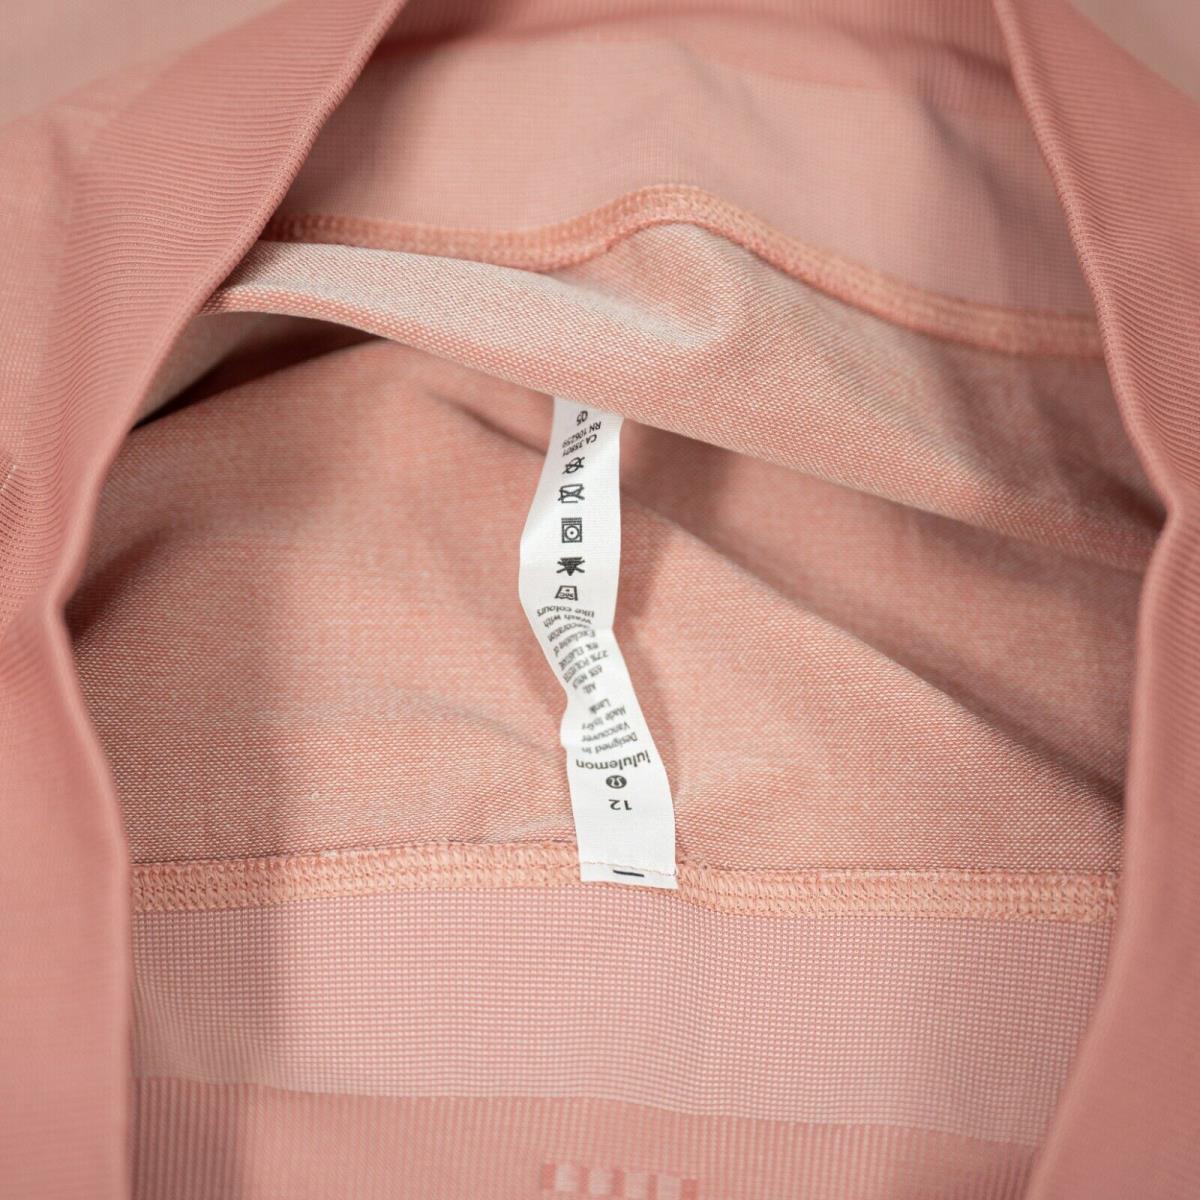 Lululemon clothing  - Pink 3